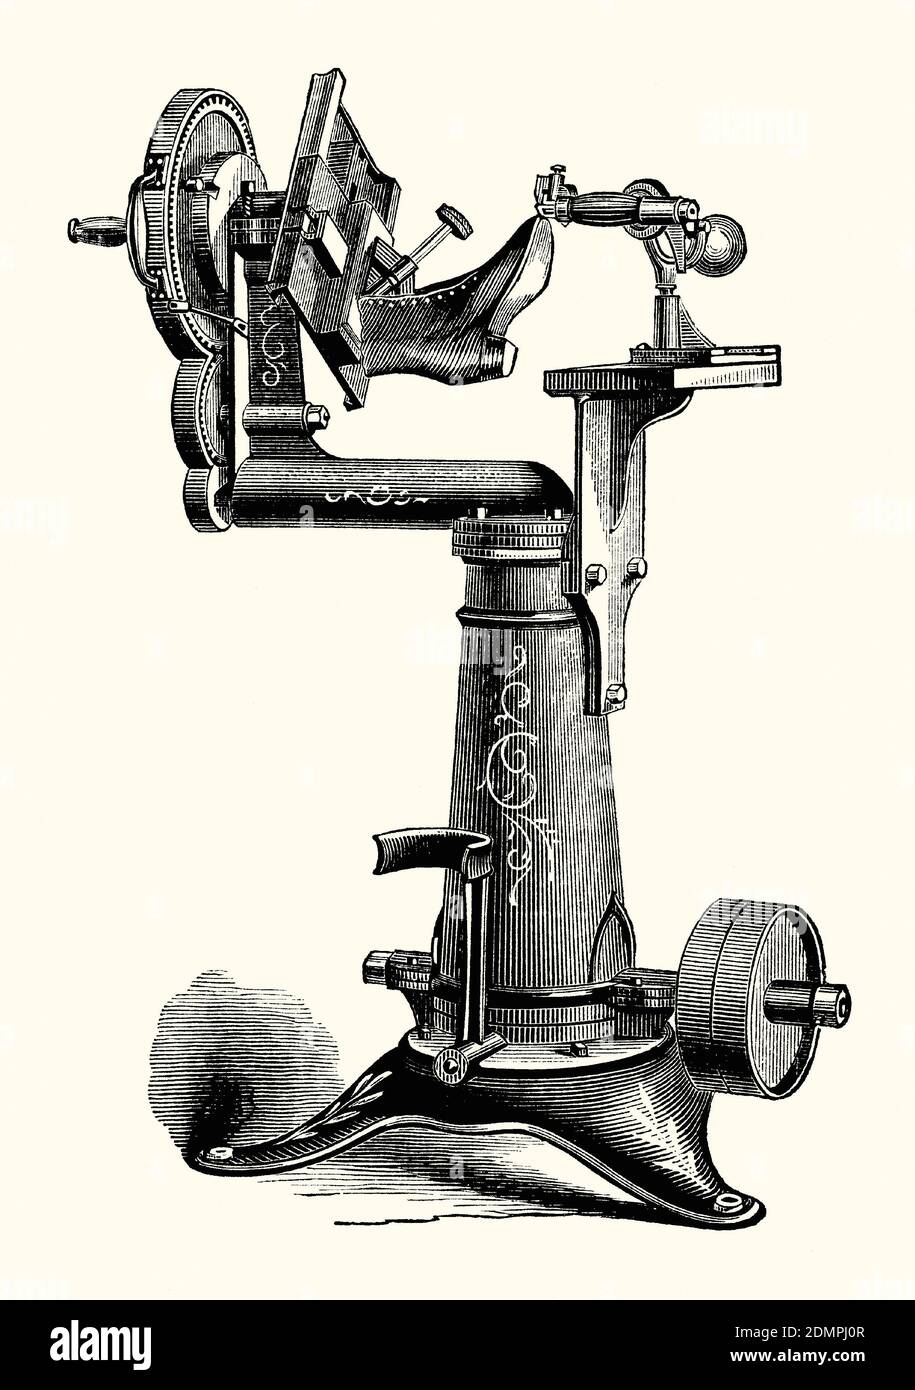 Eine alte Gravur einer Schuh-Schneide-Schneidemaschine aus dem 19. Jahrhundert. Es ist aus einem viktorianischen Maschinenbaubuch der 1880er Jahre. Der Schuh oder Stiefel ist auf einem Wagenheber oder zuletzt montiert. Es wird dann vom Bediener gegen das Schneidemesser geführt, das die überschüssige Sohle schneidet. Die Klinge kann abgewinkelt werden, um der Ledersohle eine abgeschrägte Kante zu verleihen. Stockfoto